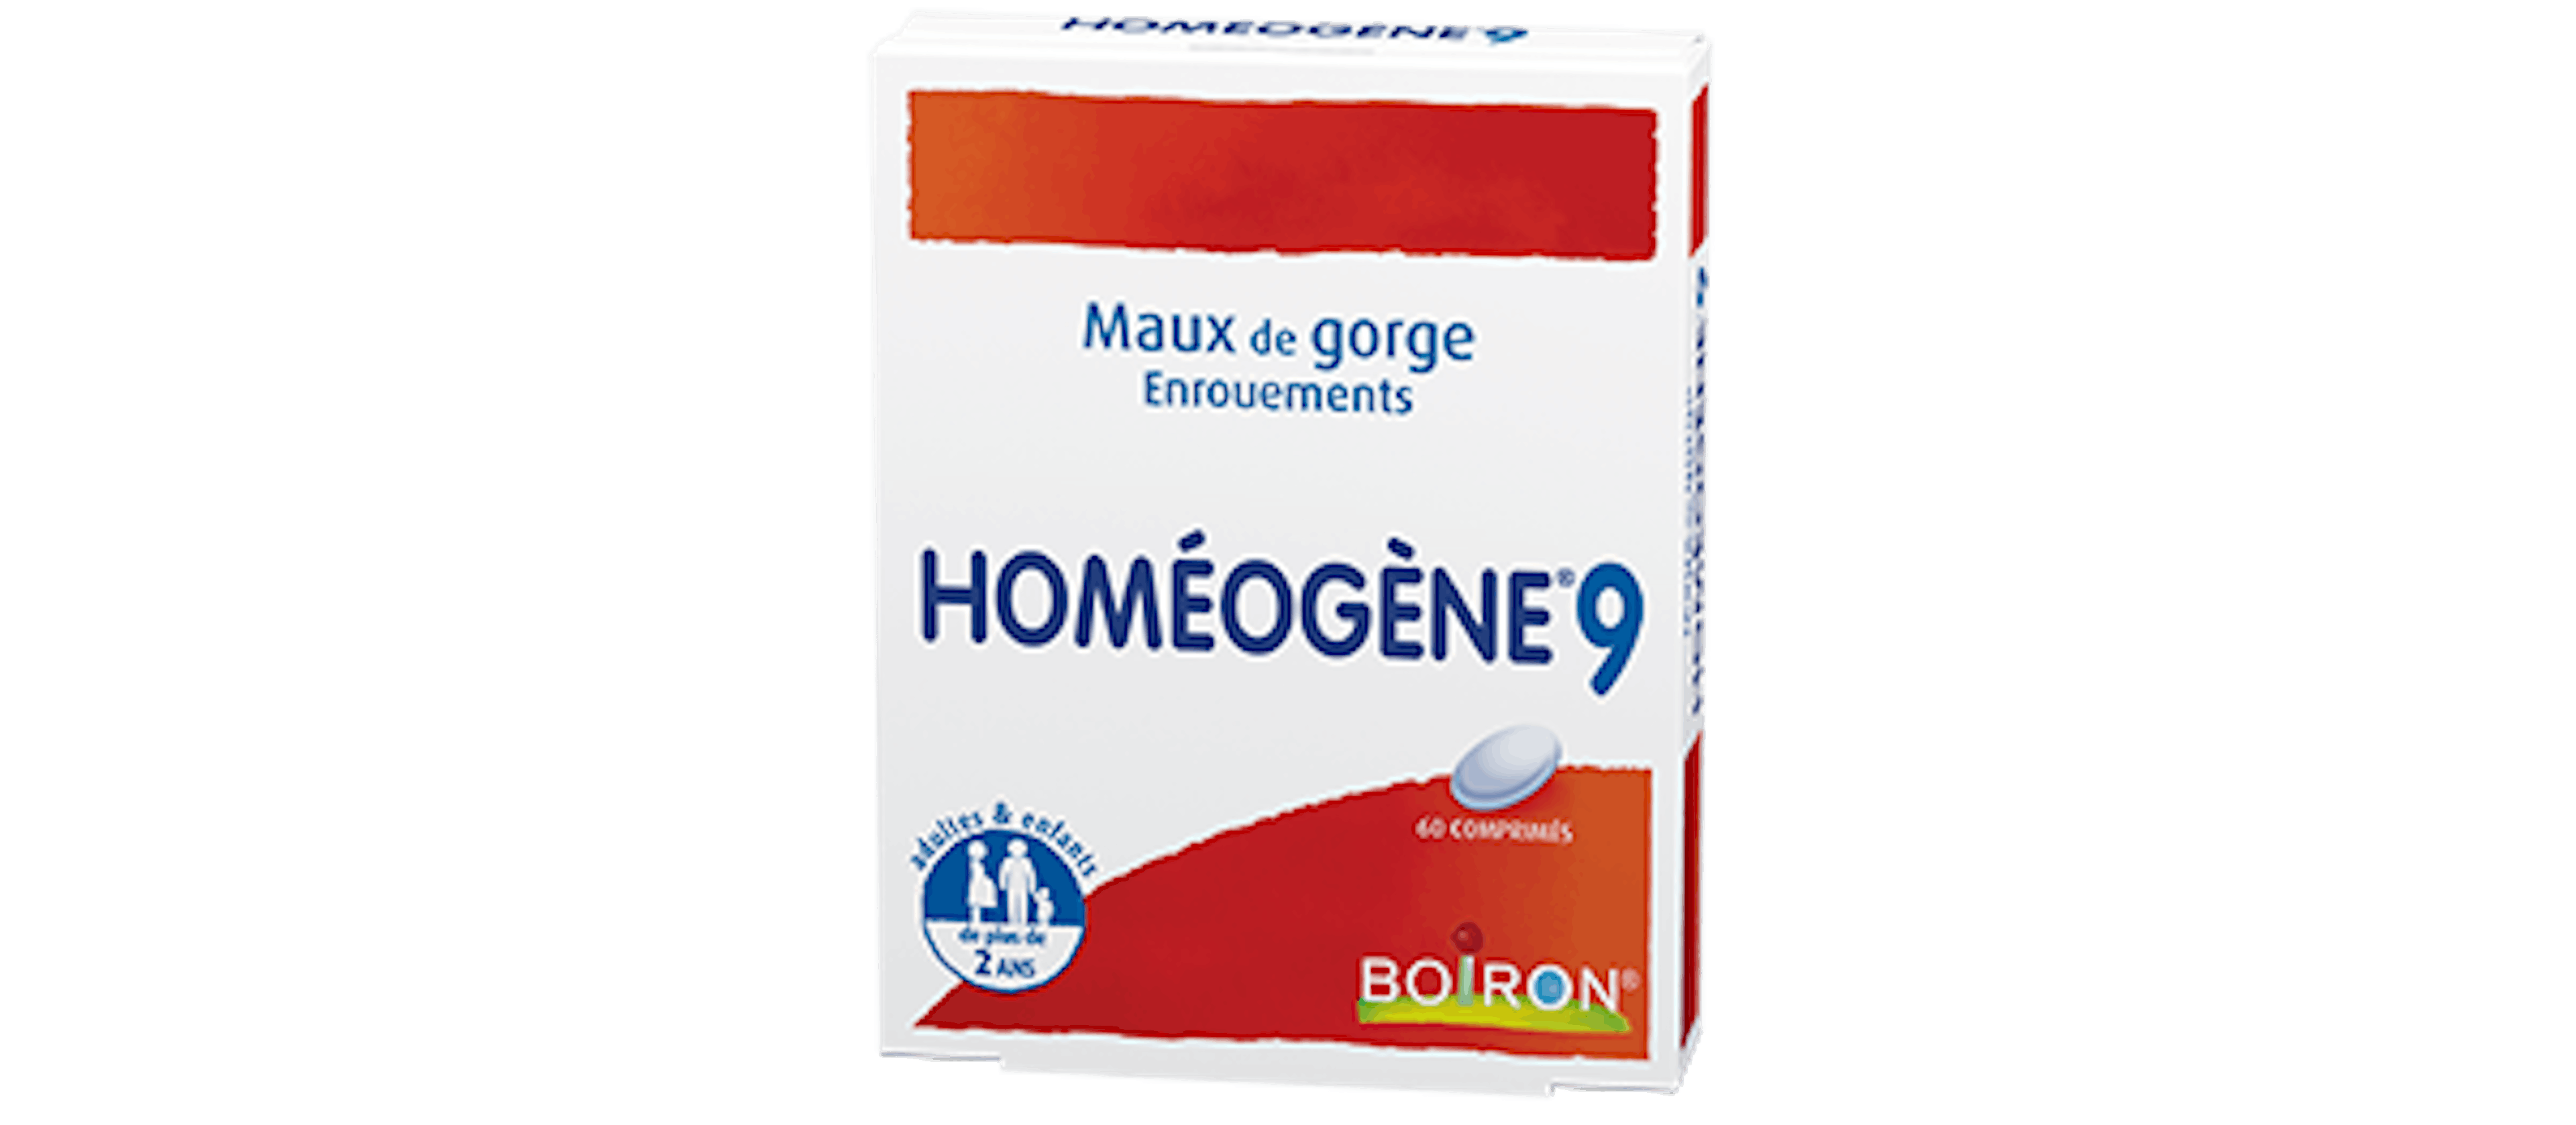 Homéopathie maux de gorges, enrouements - Homéogène® 9 Boiron